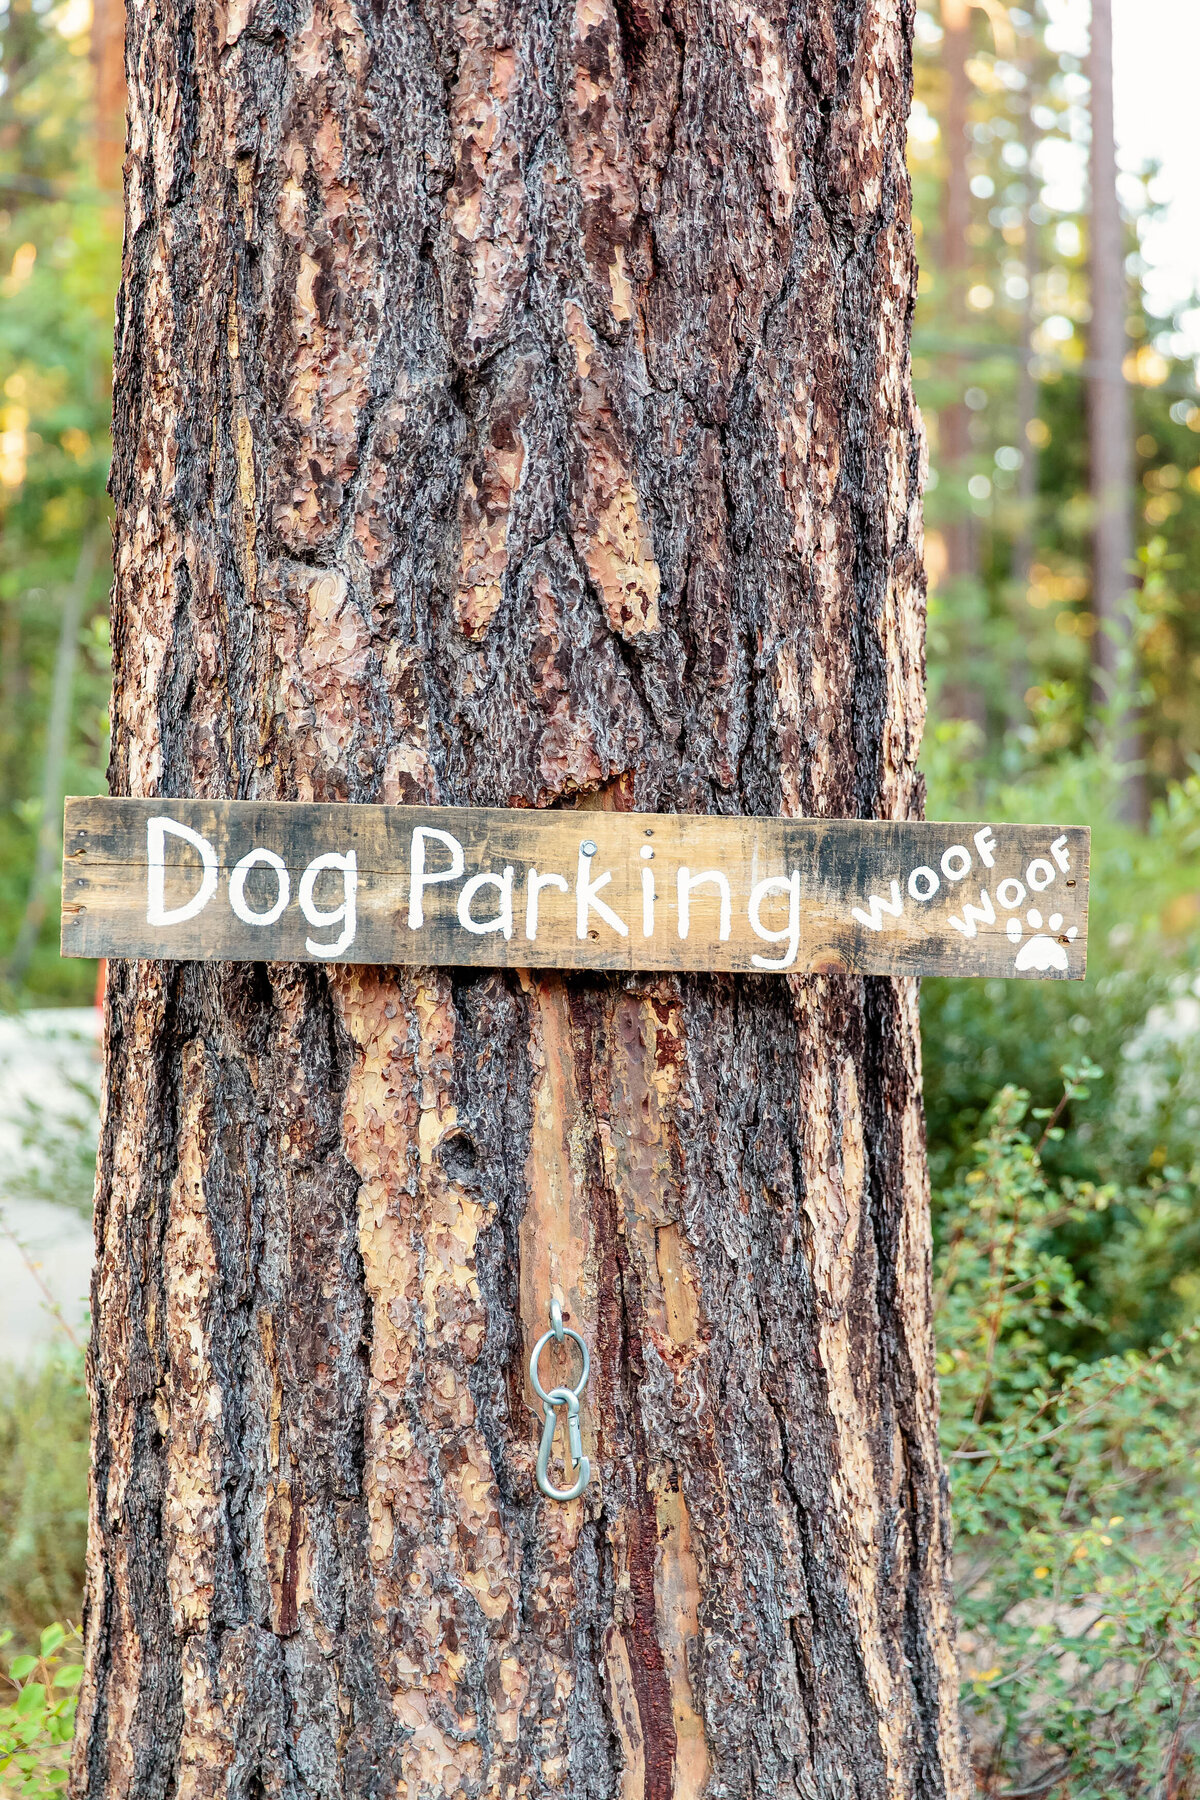 sugar-pine-cakery-dog parking-sign-lake-tahoe